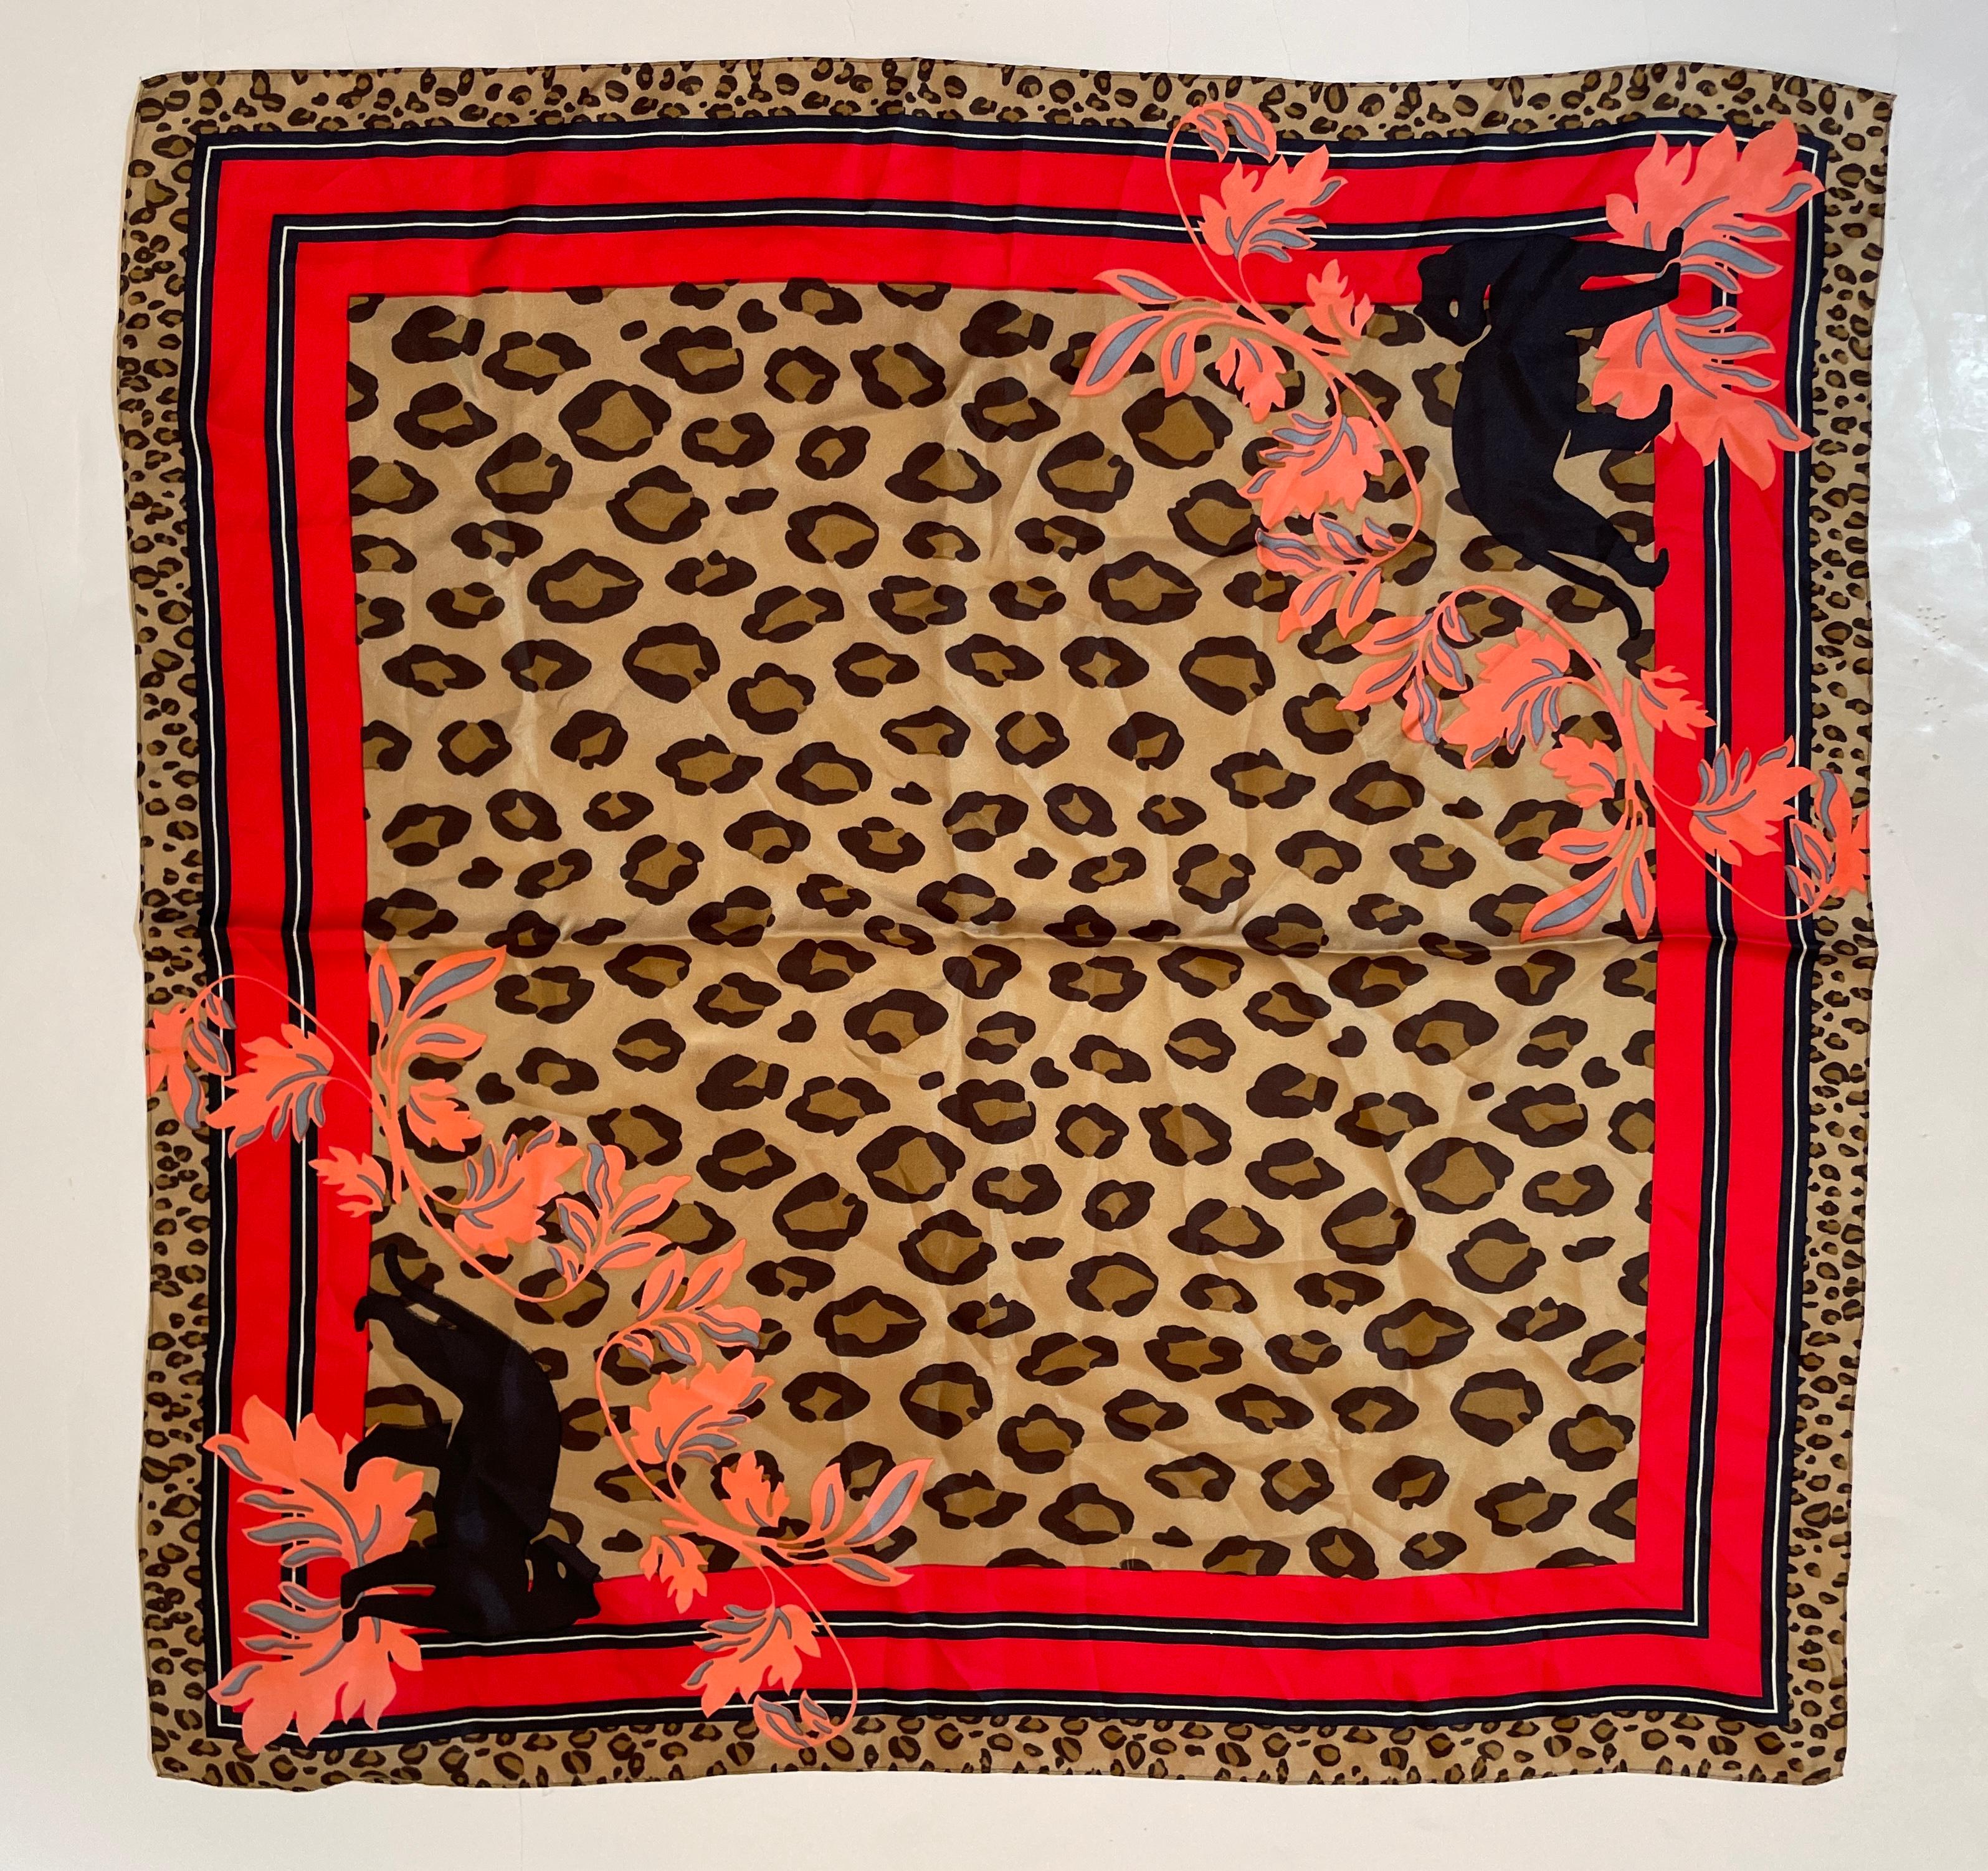 Vintage Anne Klein 'Leopard Print Seidenschal.
Leopard Animal Print Seidenschal von Anne Klein.
Wurde von Anne Klein entworfen. 
Das Design in der Mitte hebt das Fell des Leoparden mit hellgelben bis dunkelgoldenen und dunklen Flecken hervor. 
Die